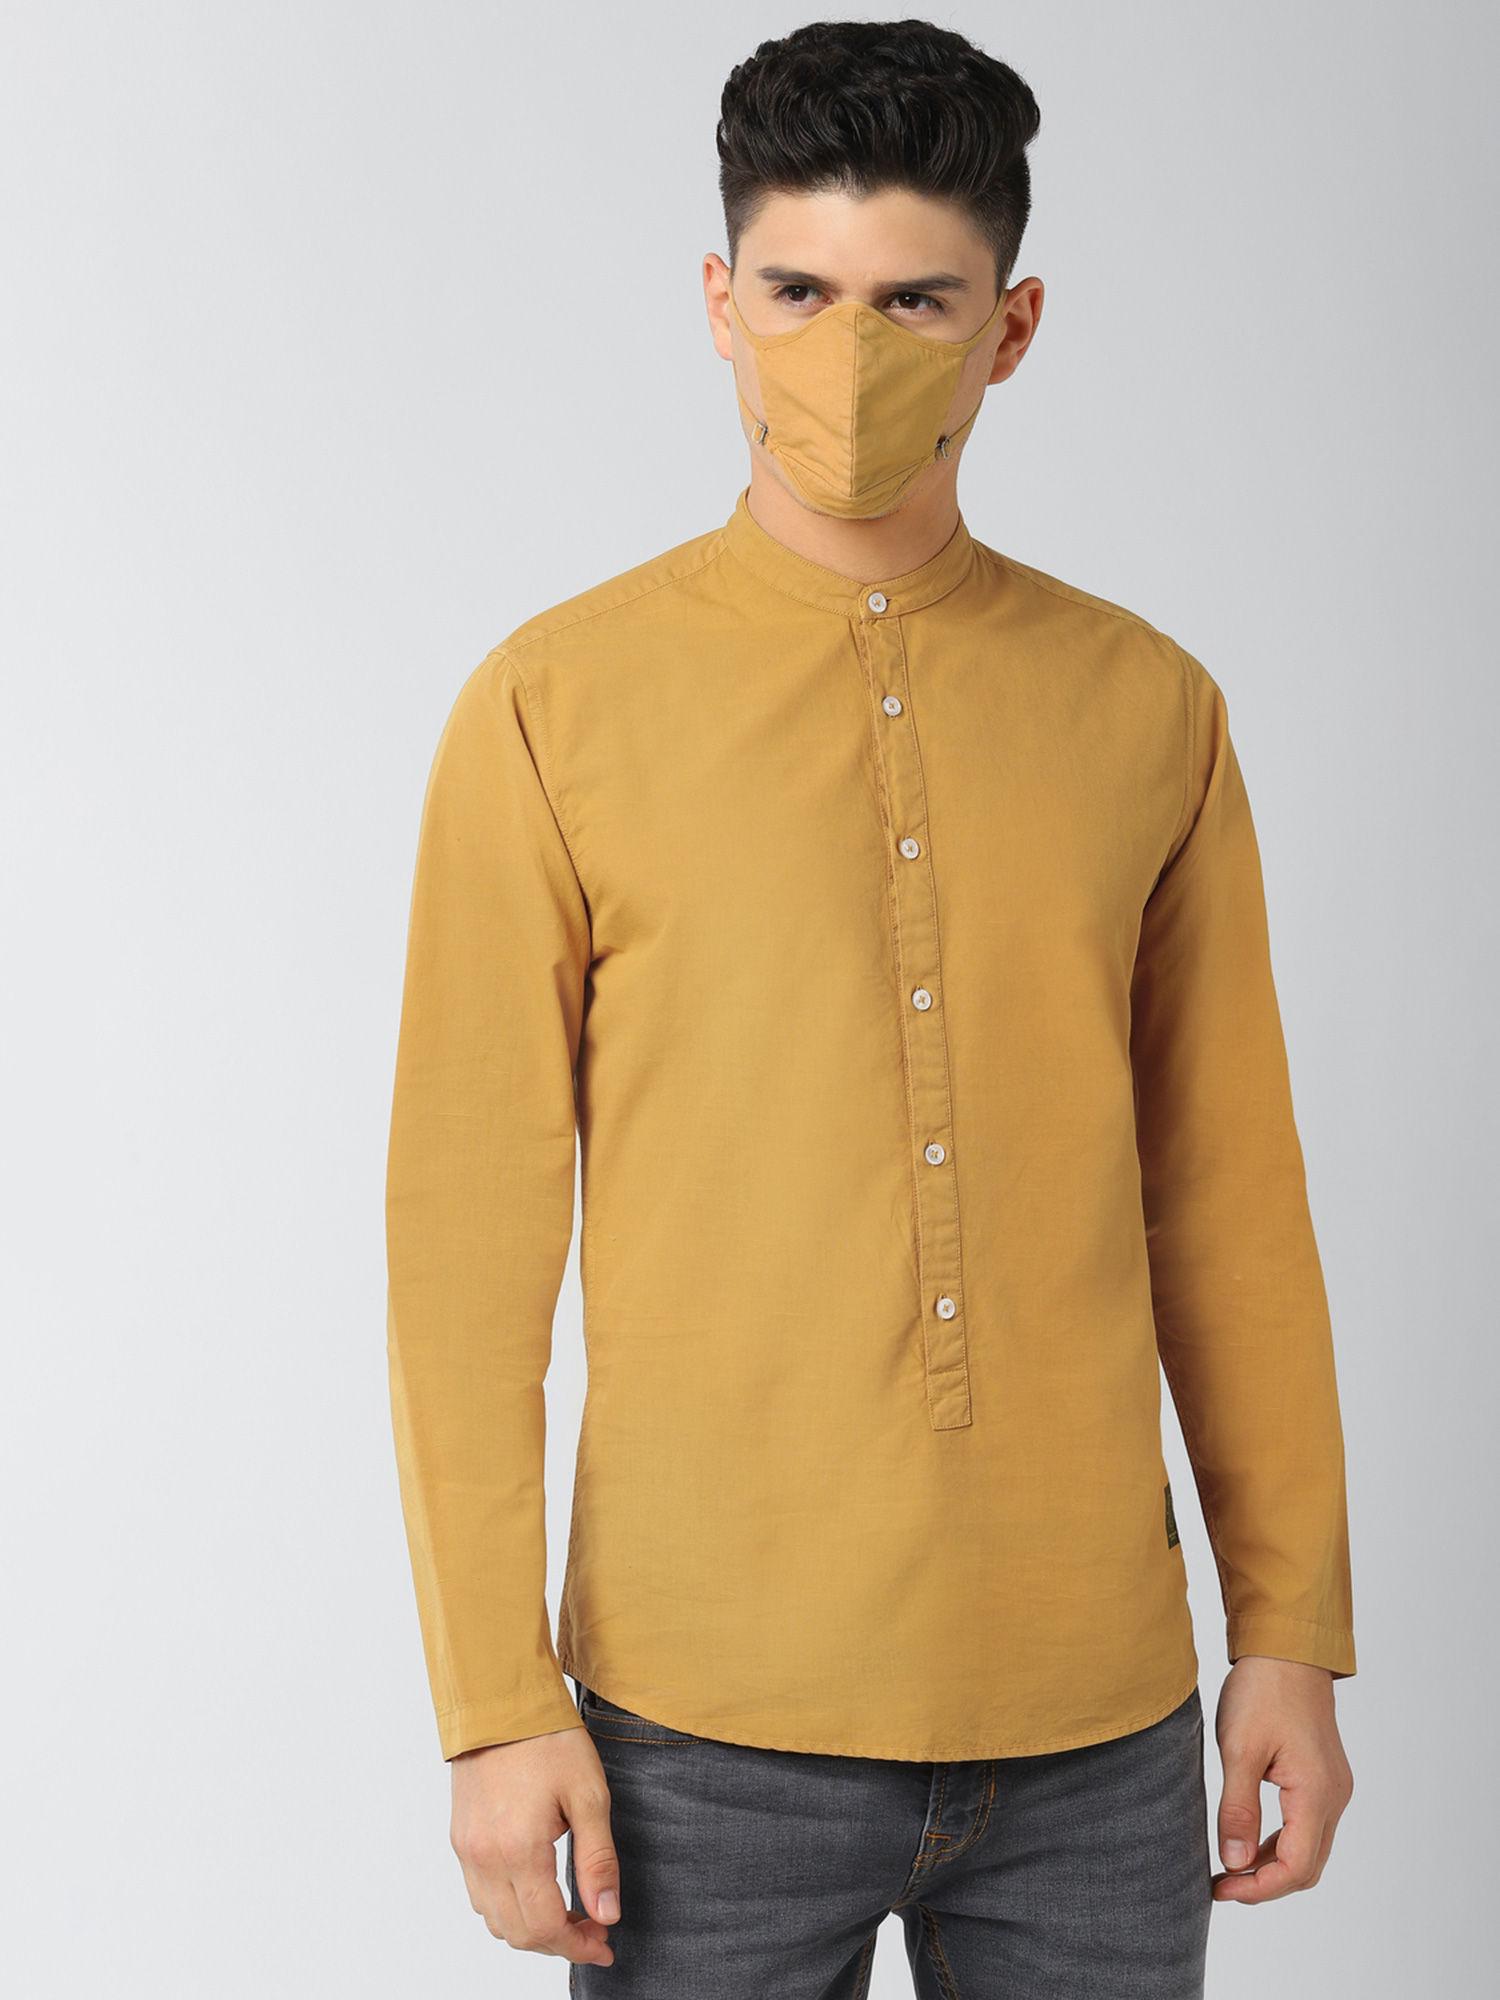 peter england yellow shirt and mask